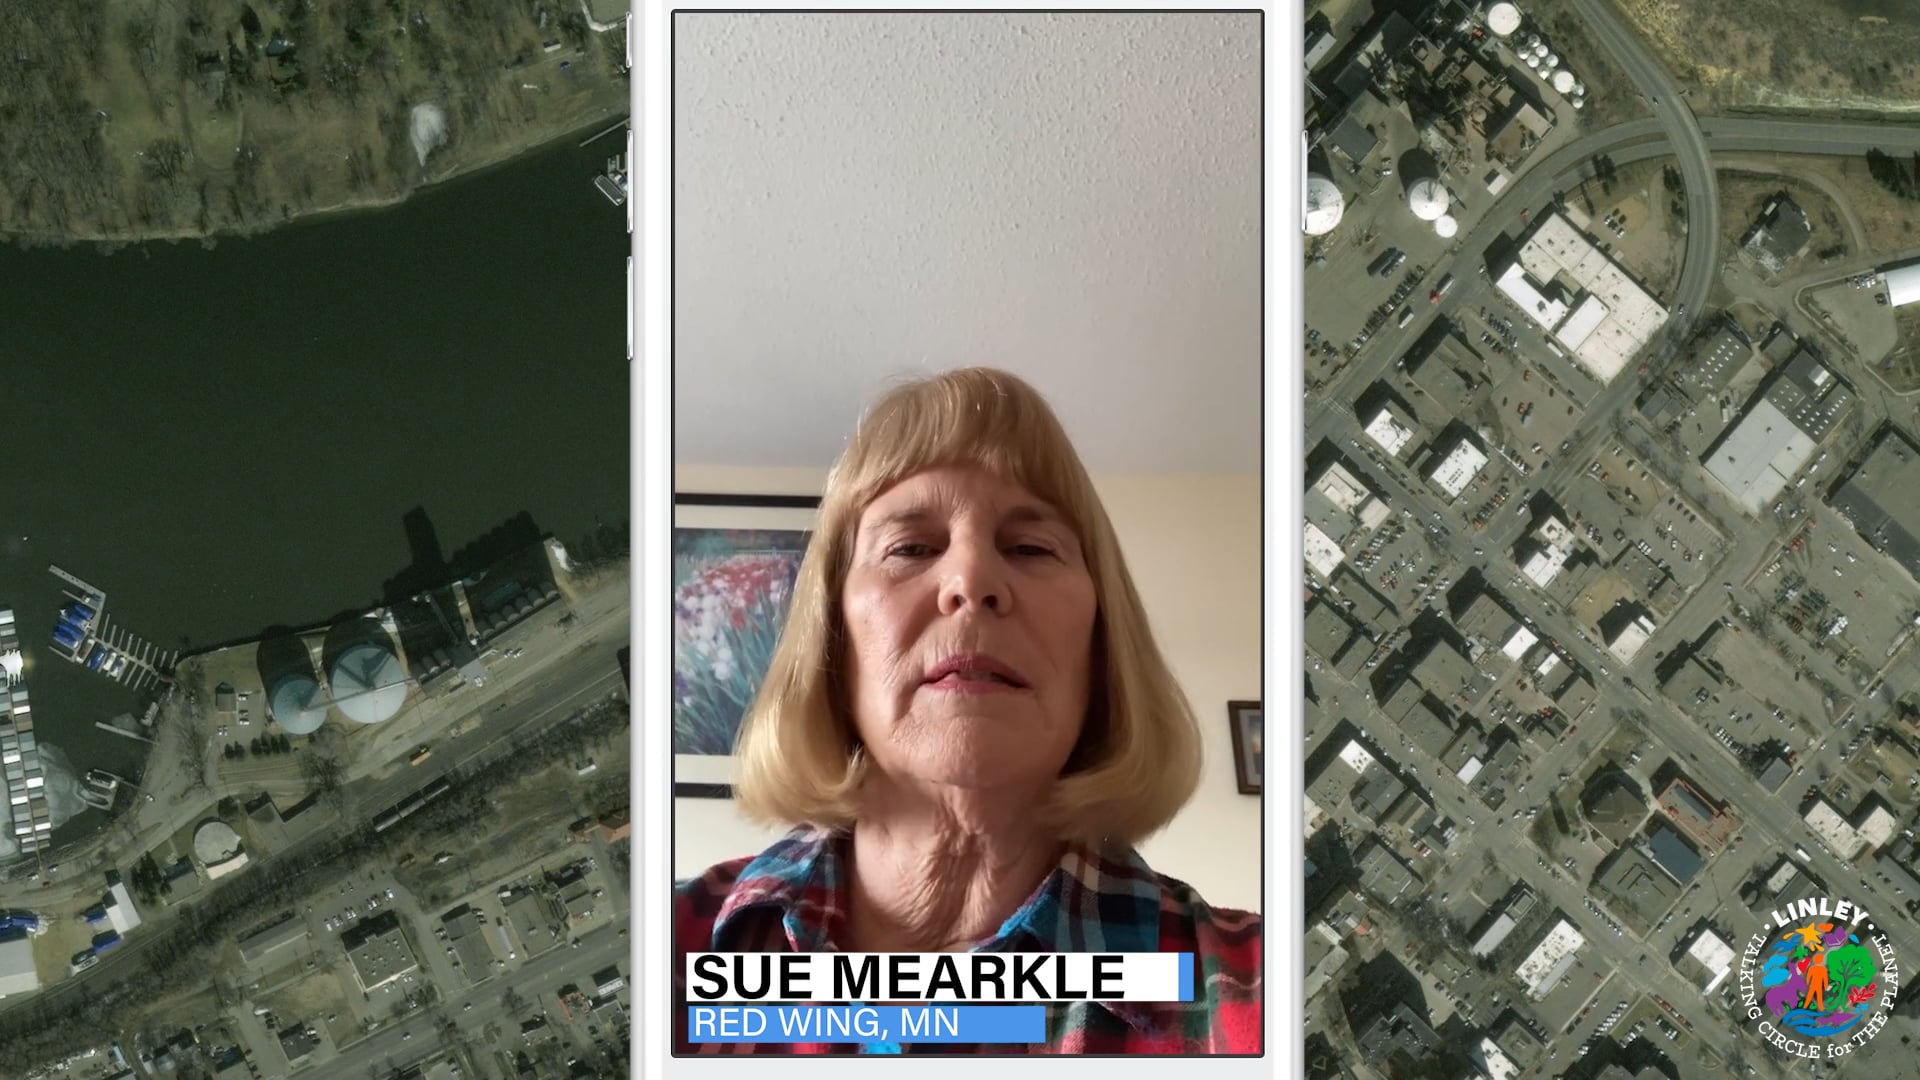 Sue Mearkle